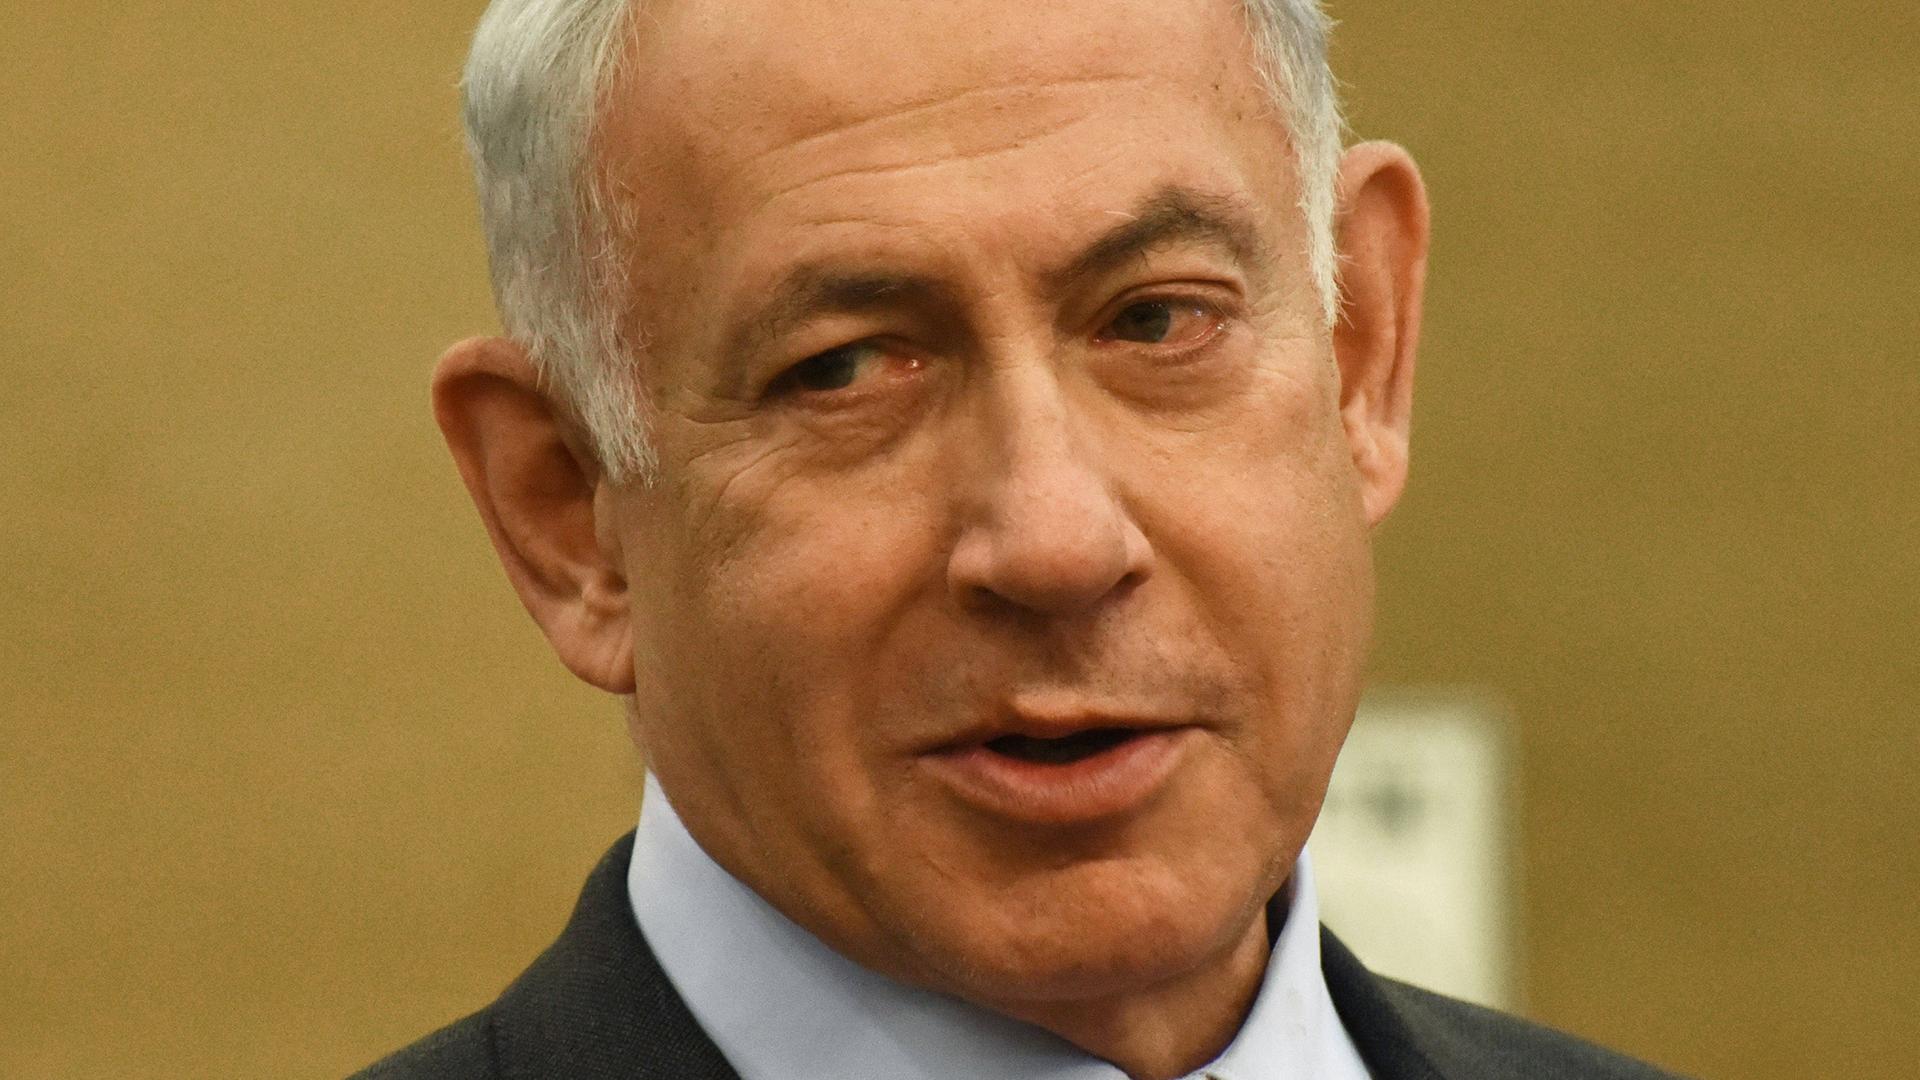 Benjamin Netanjahu schaut vor einem beigen Hintergrund nach rechts unten